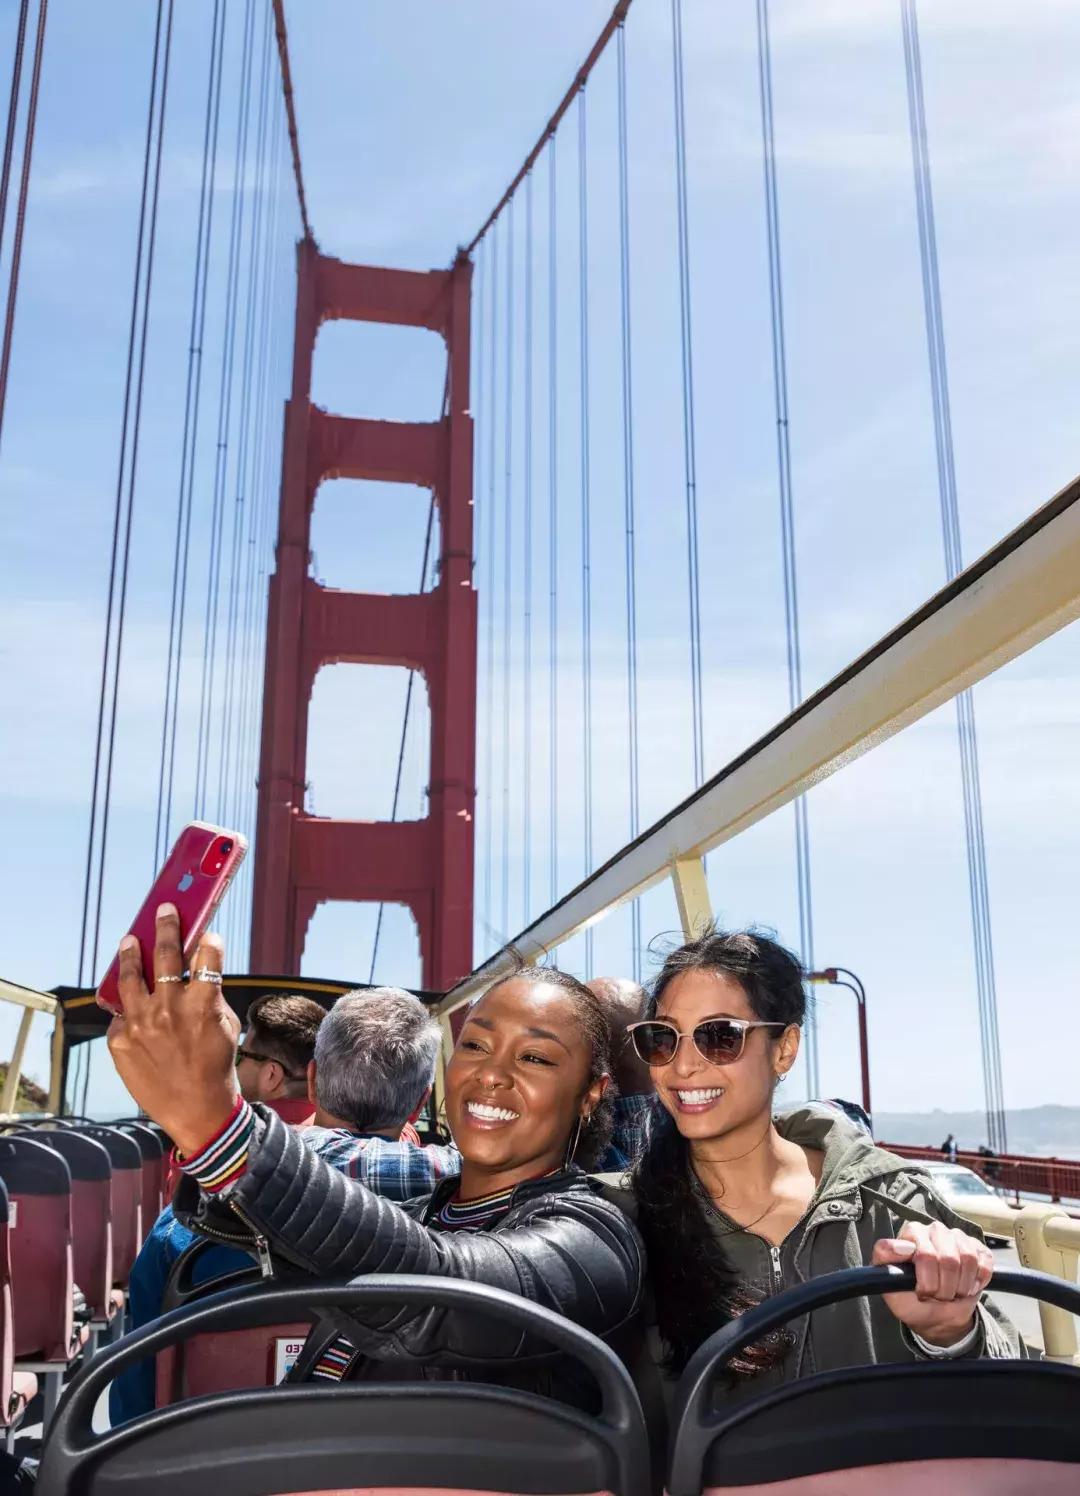 Friends taking selfies on the Golden Gate Bridge